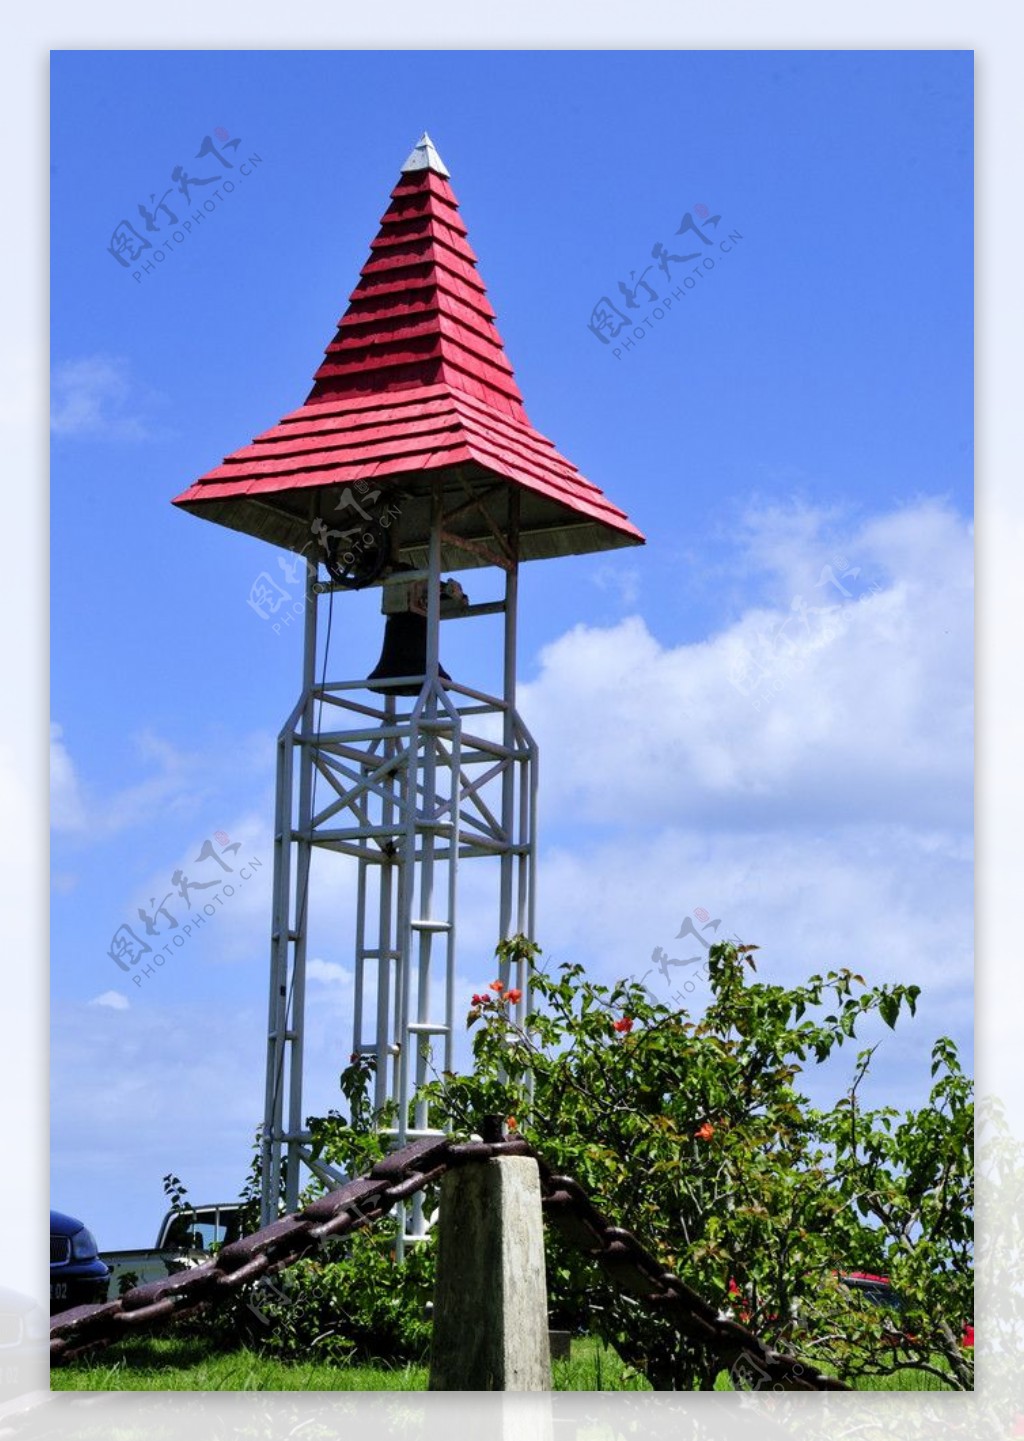 毛里求斯路易港红瓦耶稣教堂的警钟亭图片